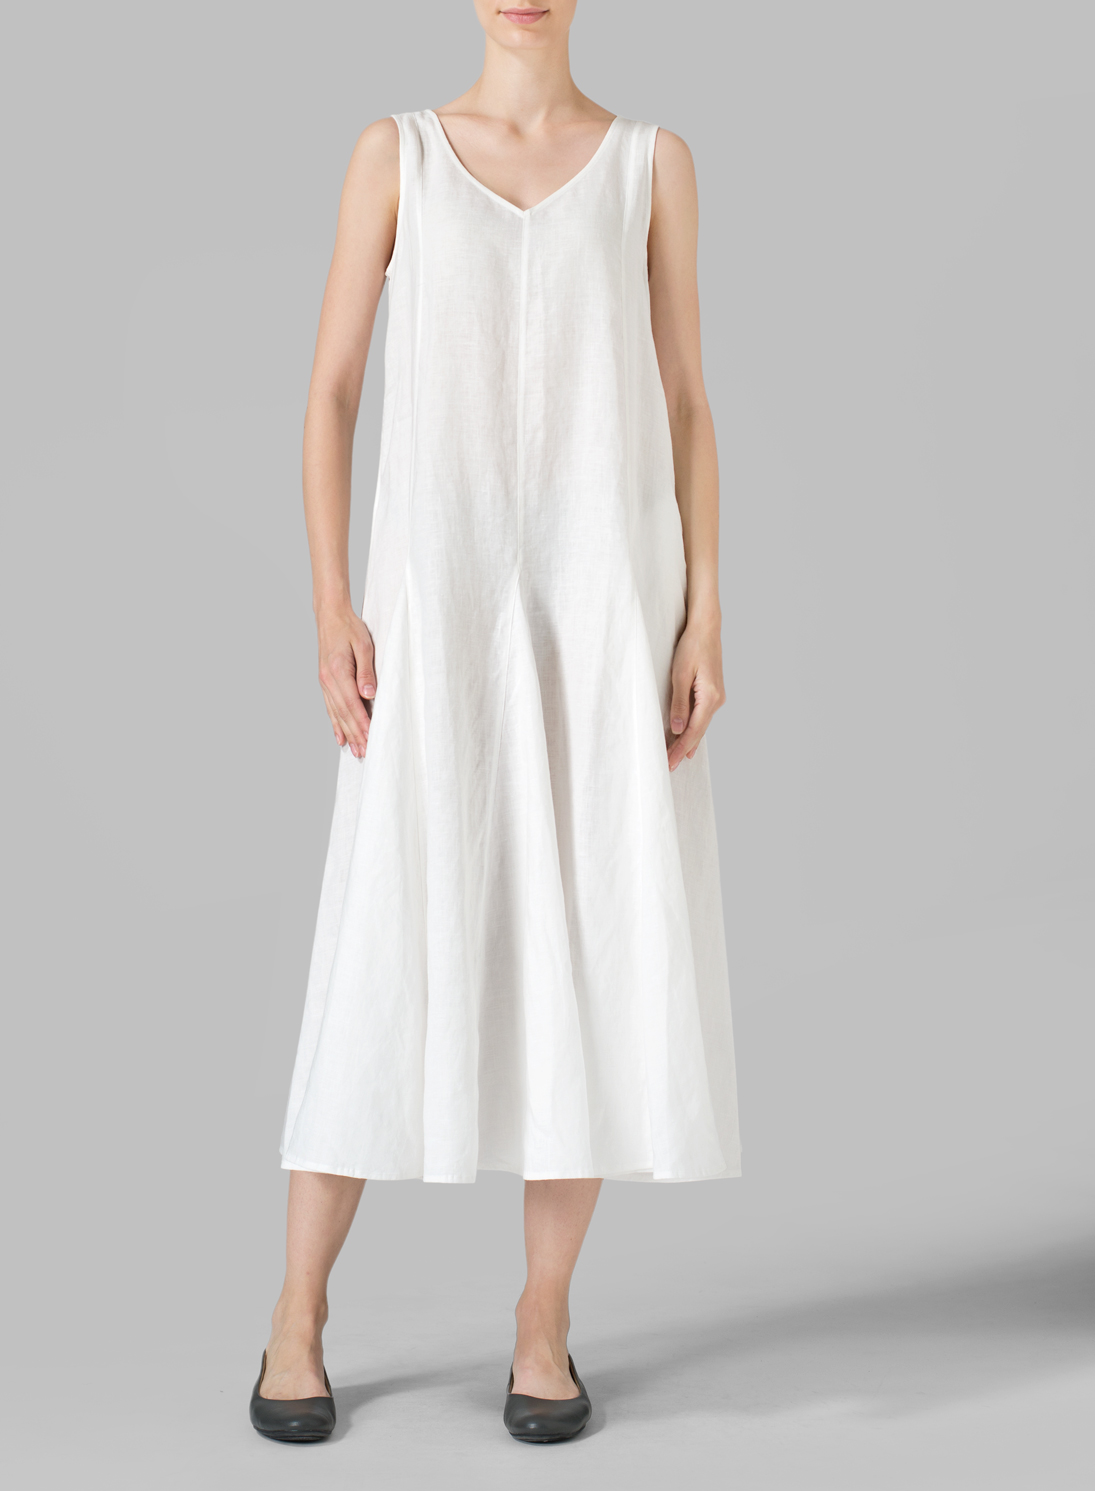 Linen Sleeveless Tea Length Dress